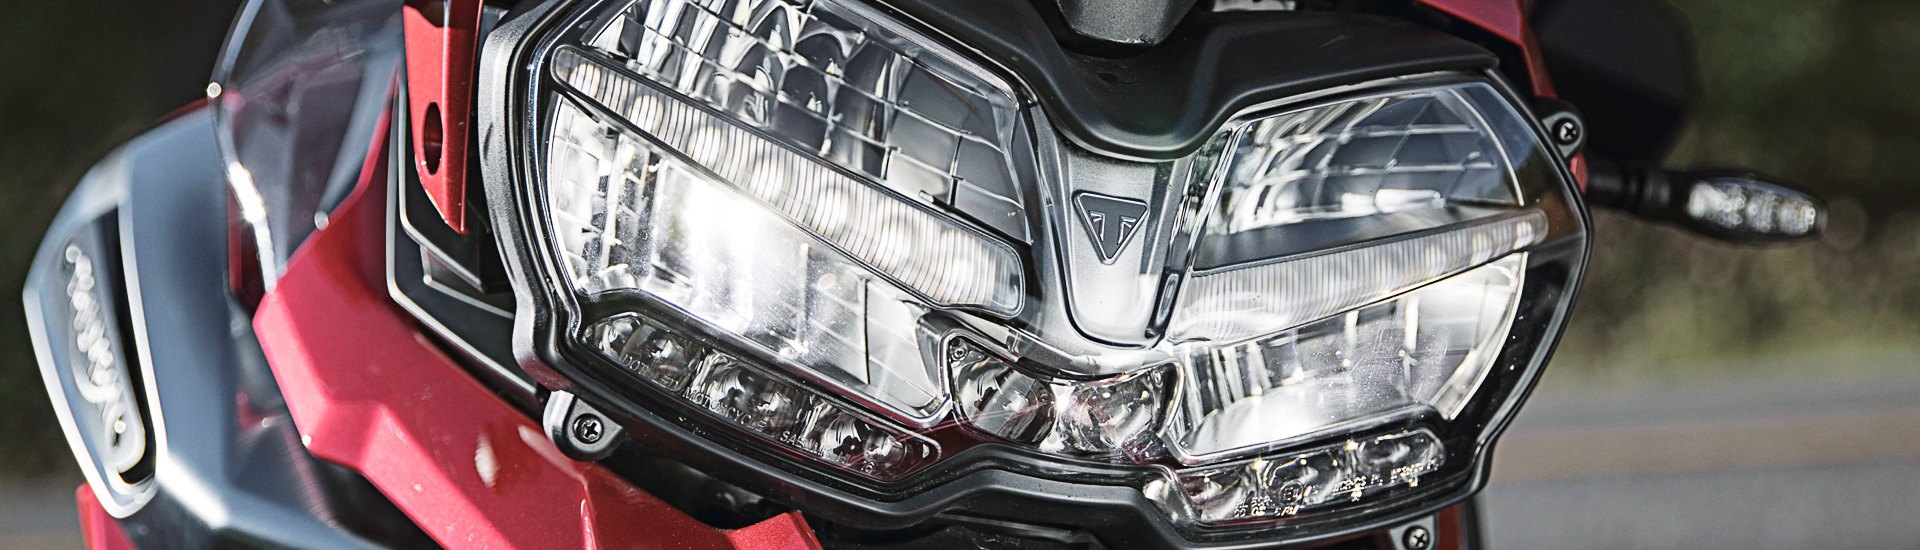 Universal Motorcycle Headlights